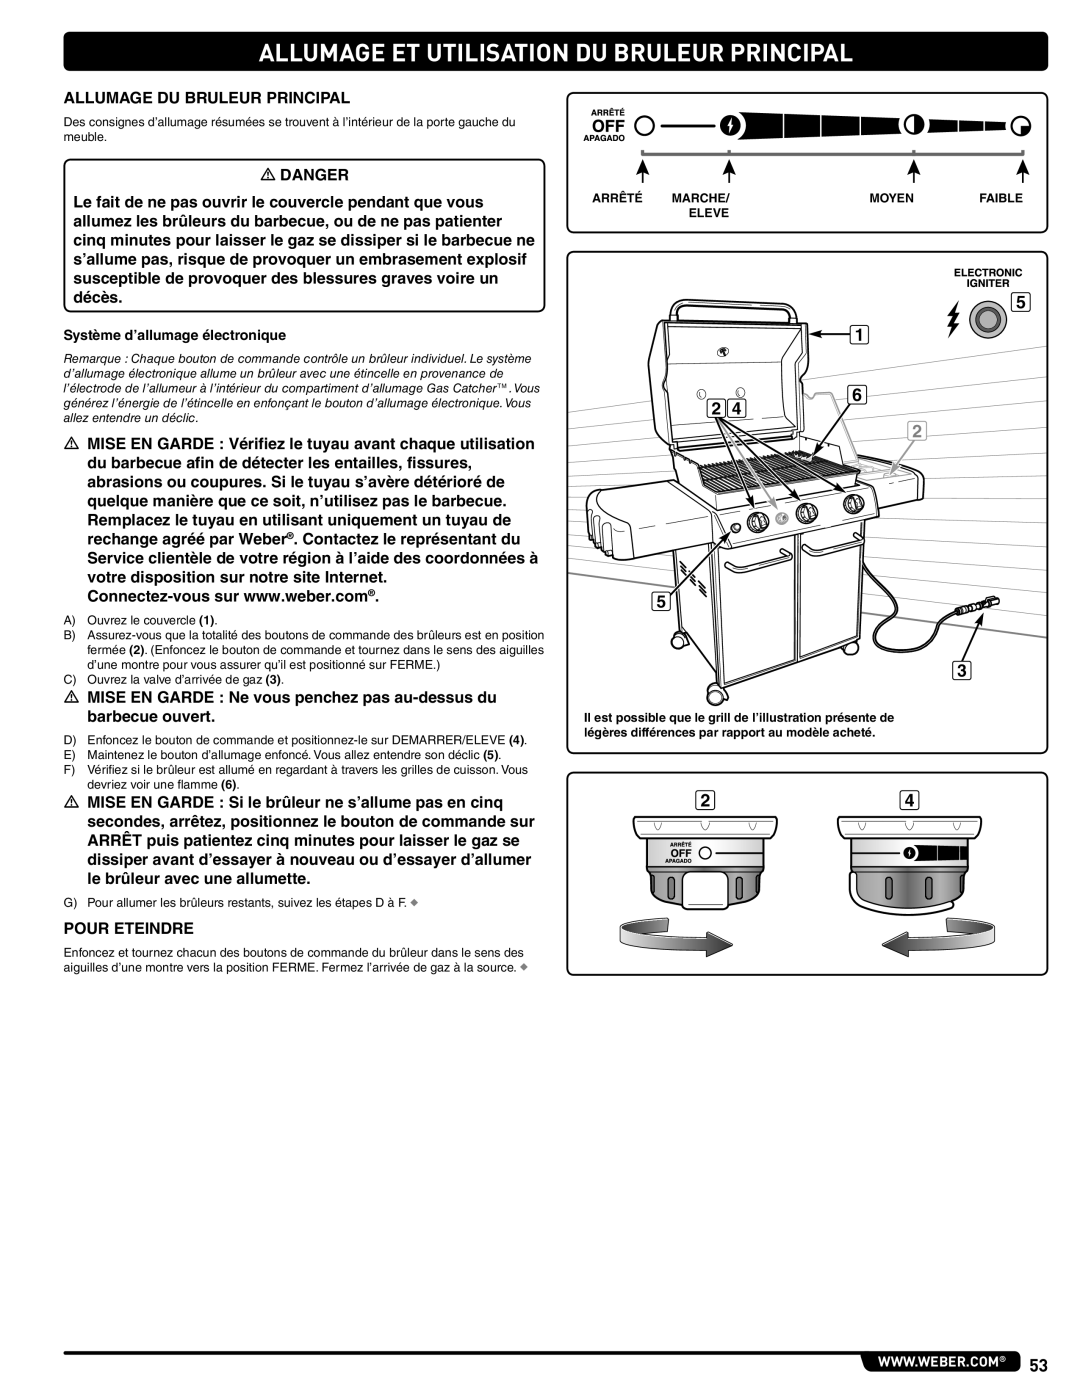 Weber 56515 manual Allumage Et Utilisation Du Bruleur Principal, Système d’allumage électronique 